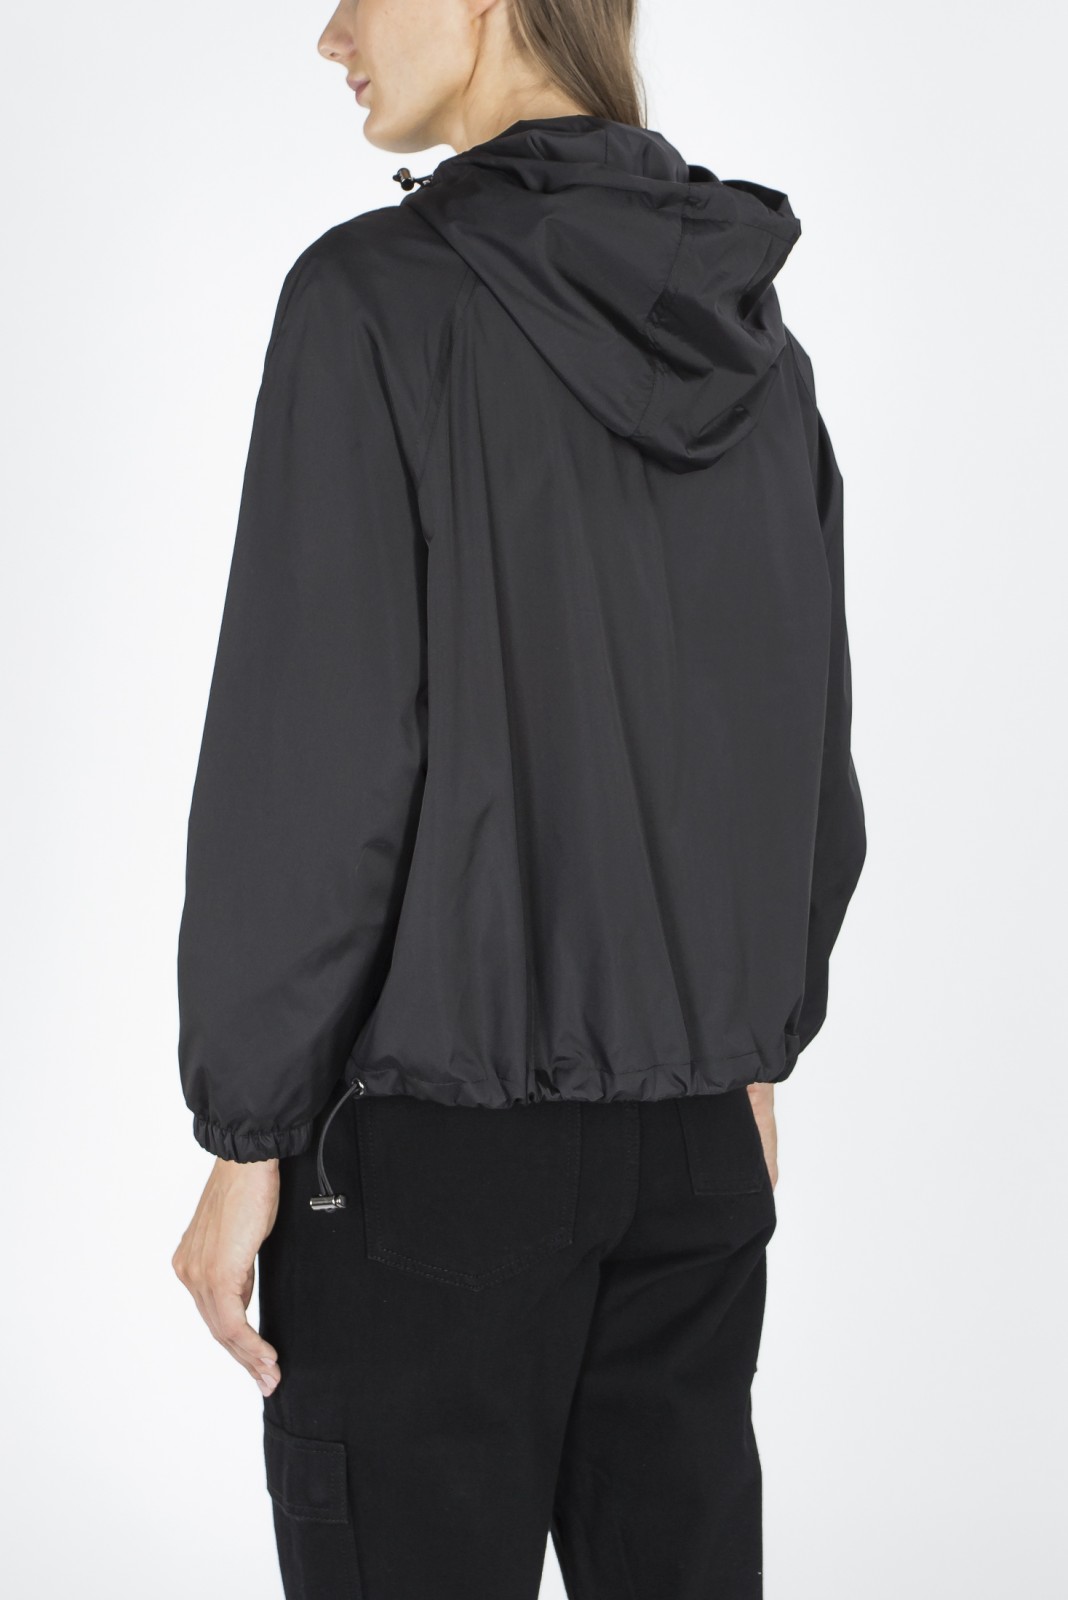 Куртка-ветровка zolla 020215612094, цвет черный, размер XS - фото 2